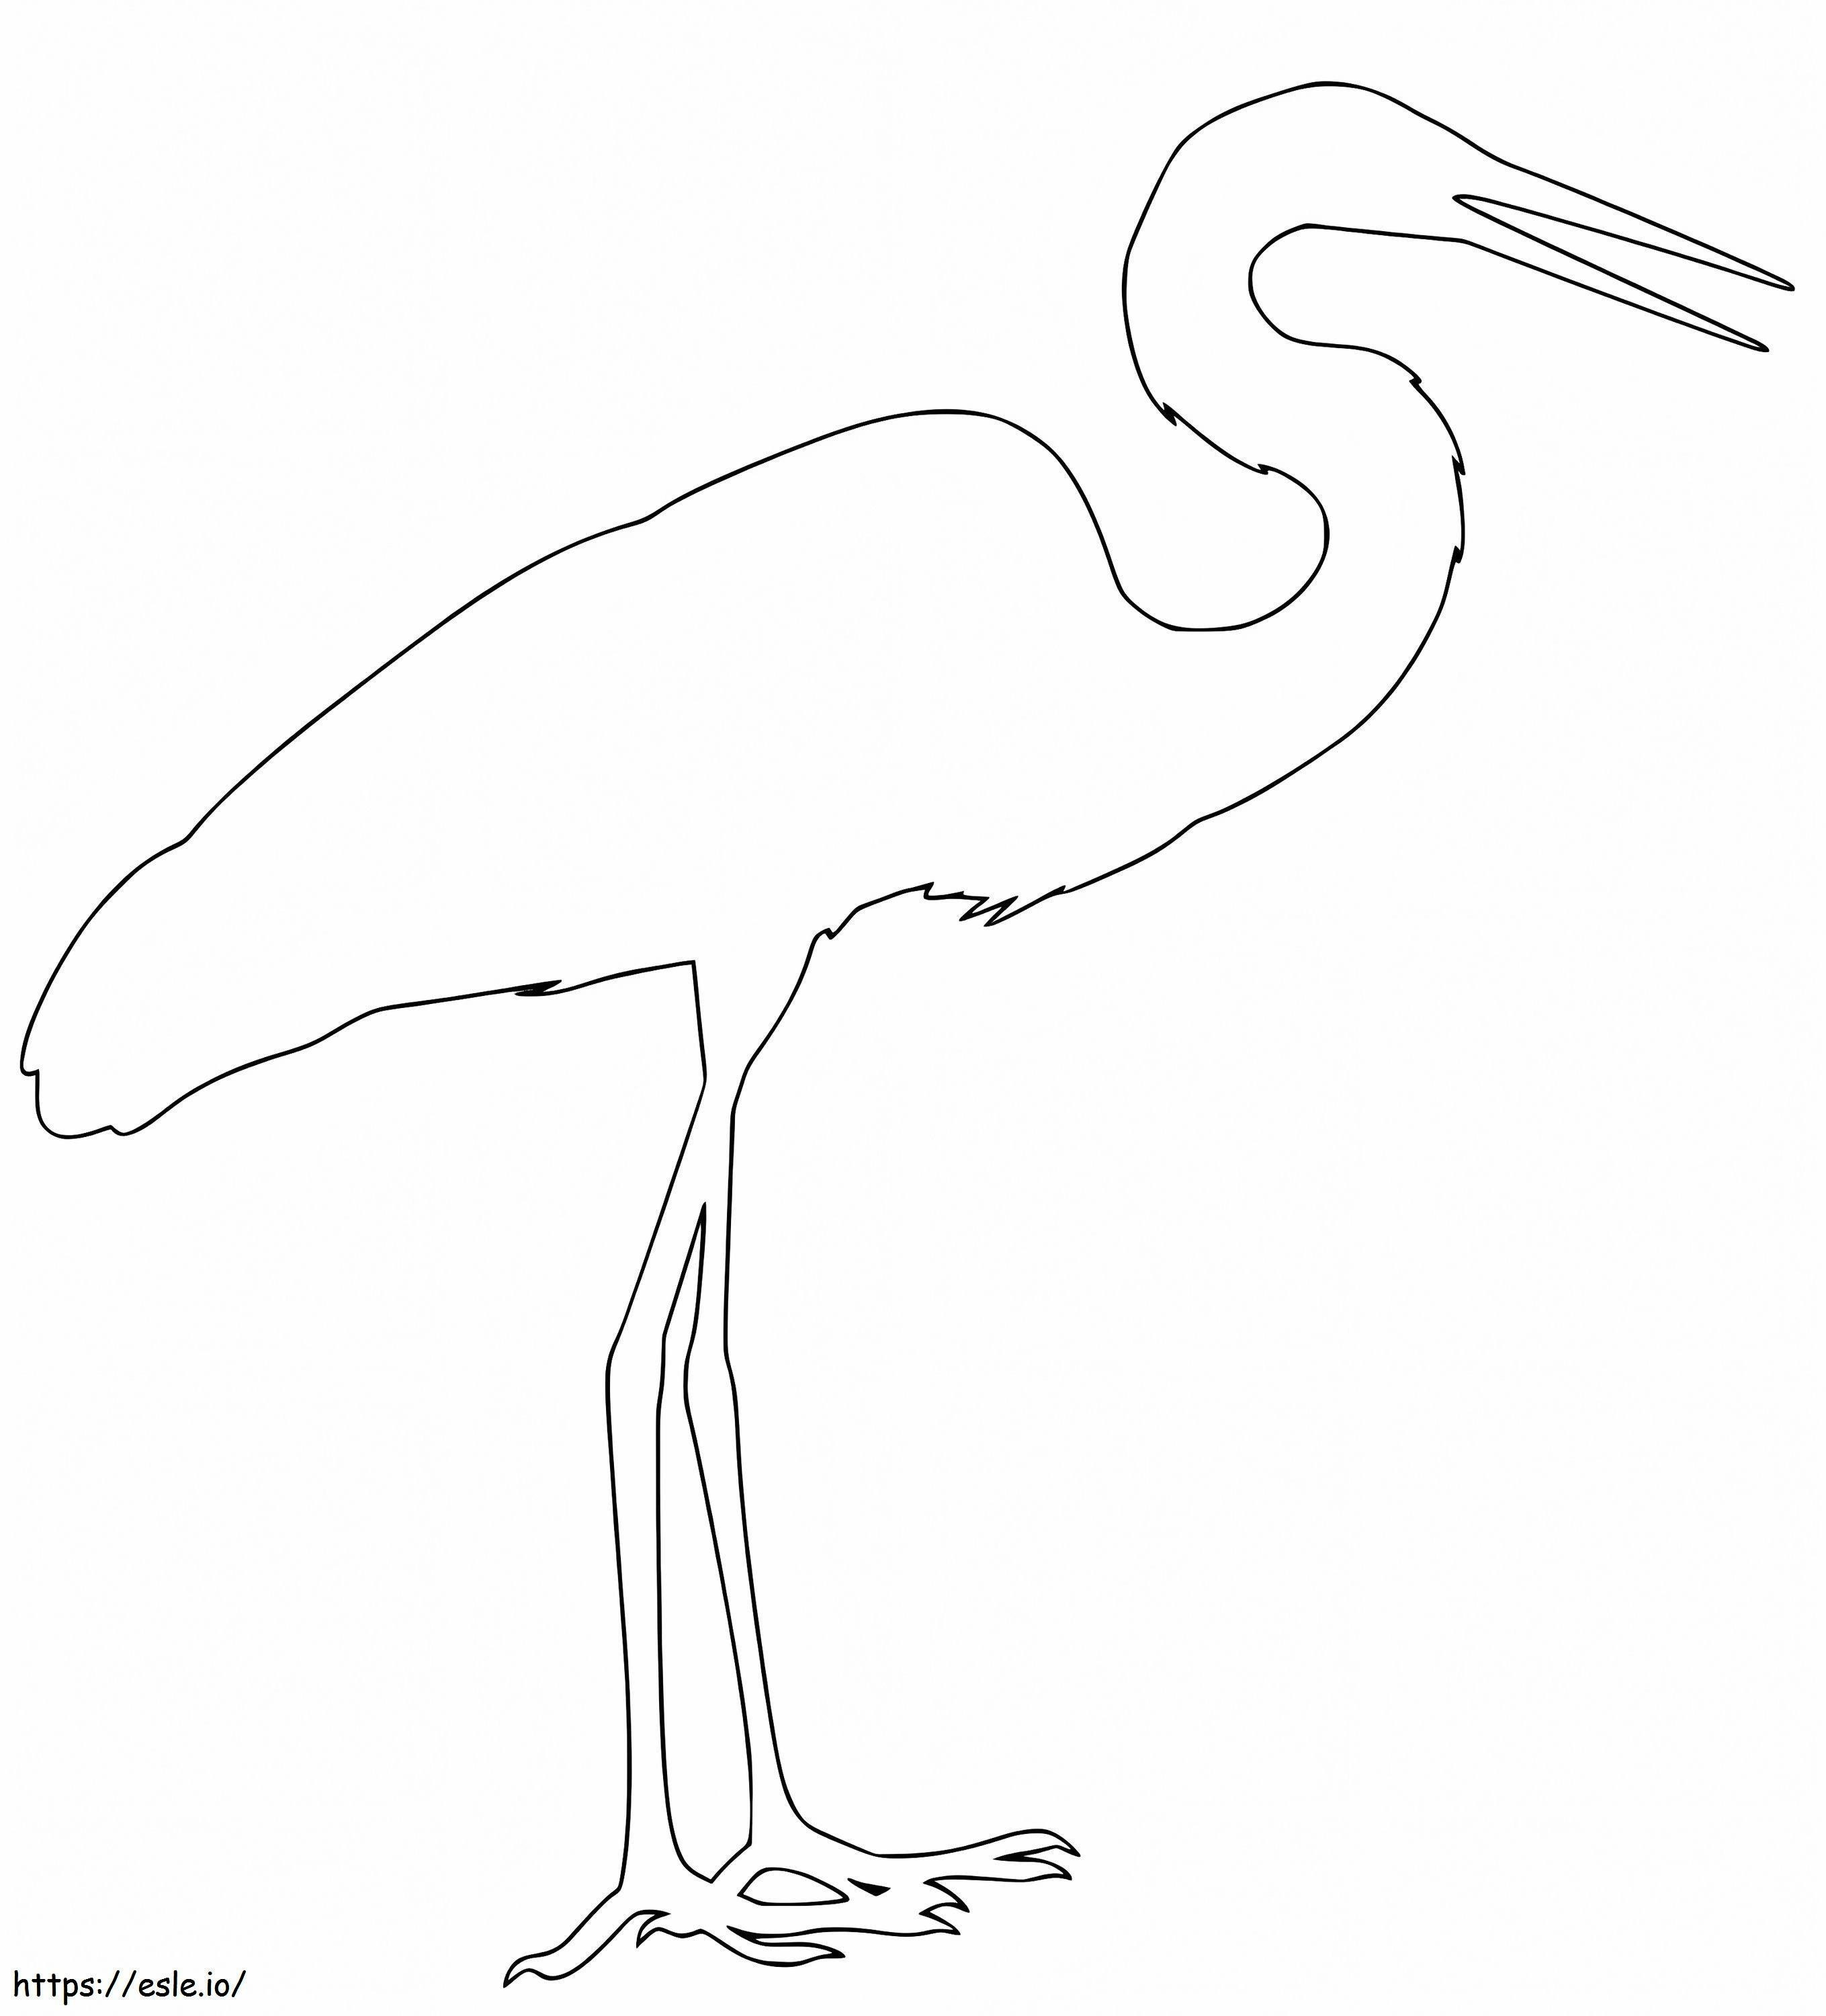 Contur egretă de colorat